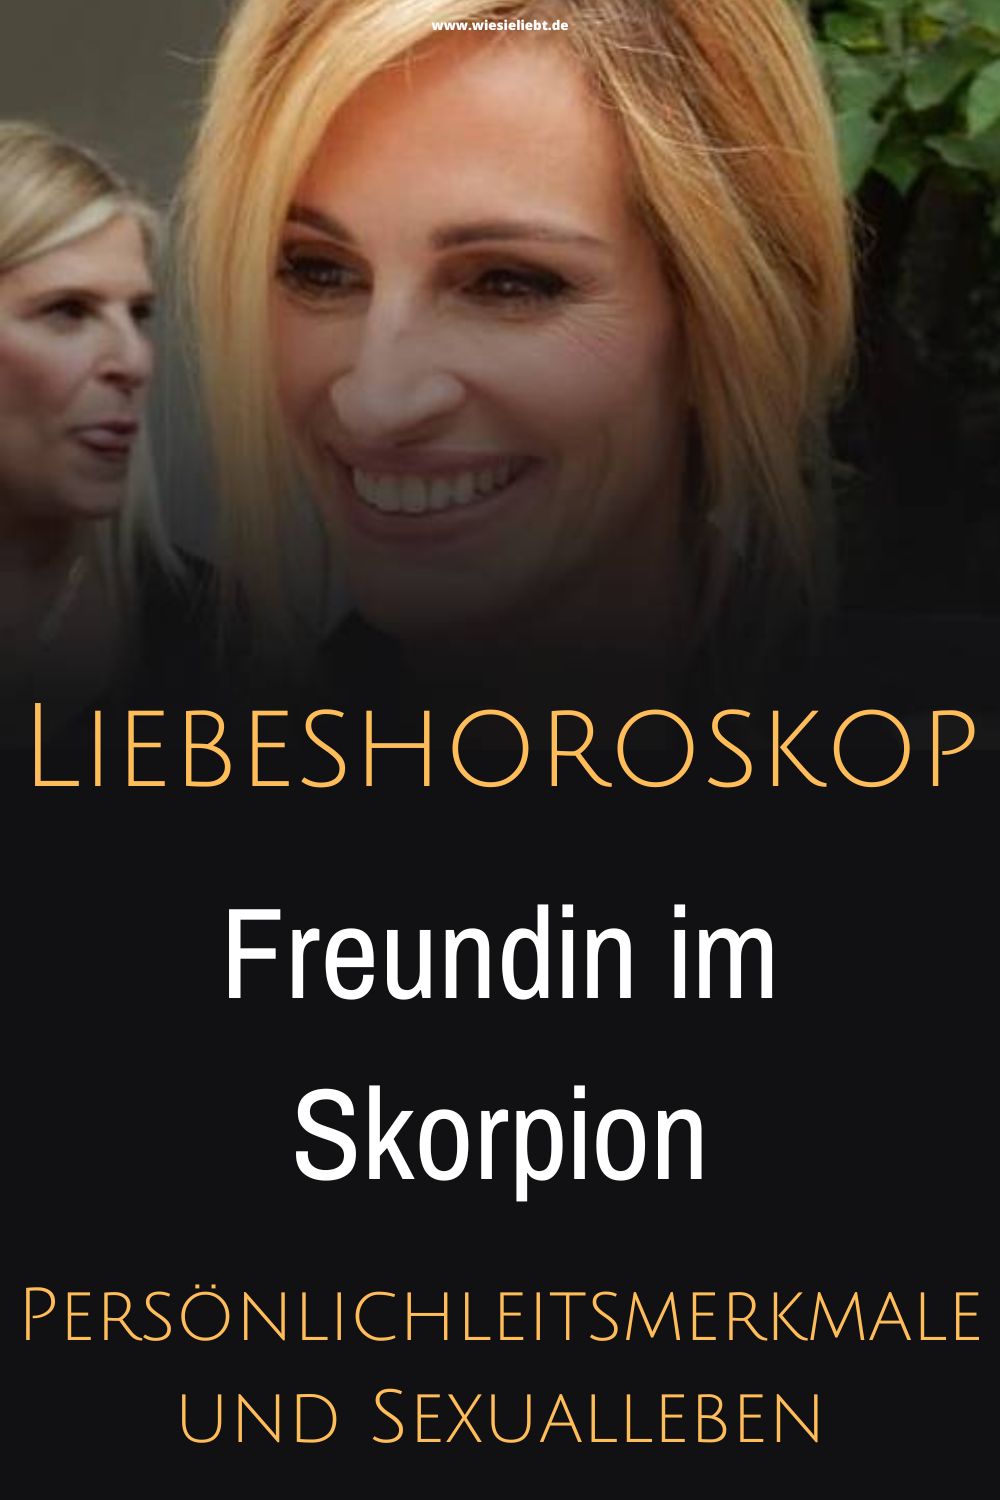 Liebeshoroskop-Freundin-im-Skorpion-Persoenlichleitsmerkmale-und-Sexualleben